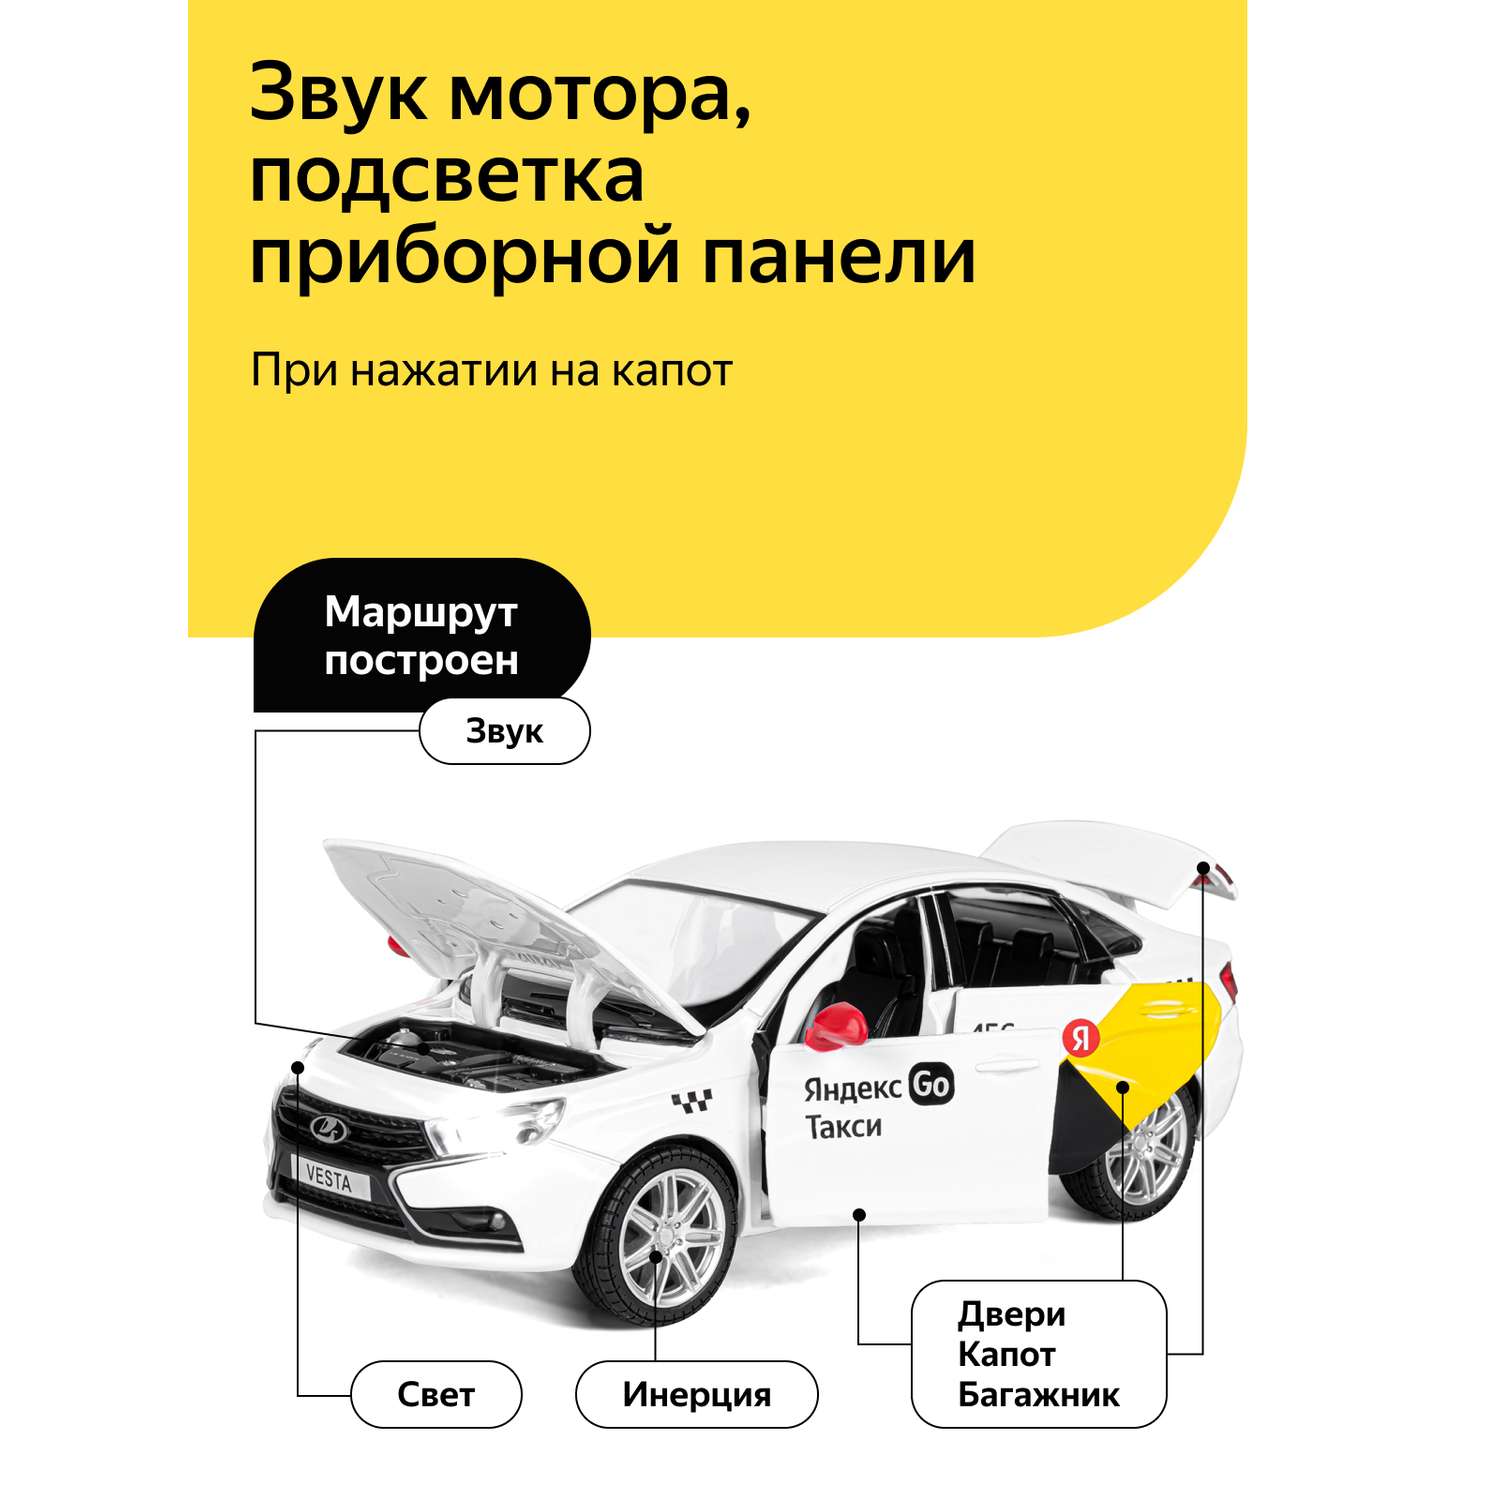 Машинка металлическая Яндекс GO игрушка детская 1:24 Lada Vesta белый инерционная JB1251344/Яндекс GO - фото 2